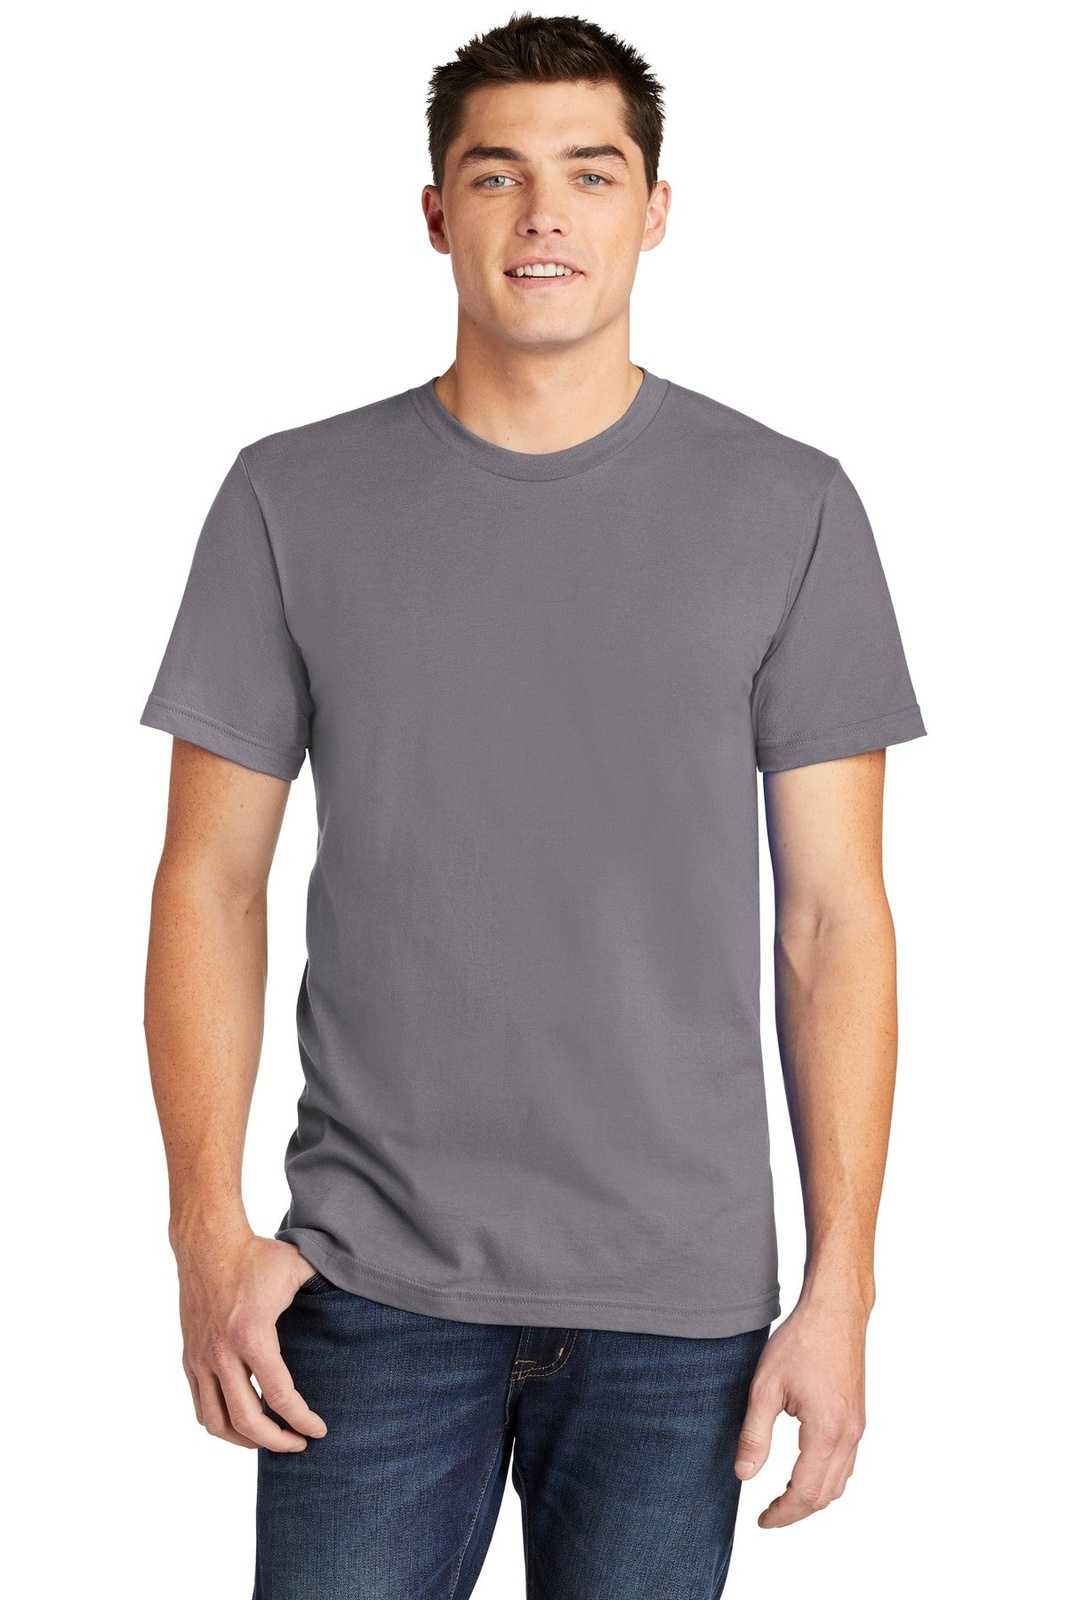 American Apparel 2001W Fine Jersey T-Shirt - Slate - HIT a Double